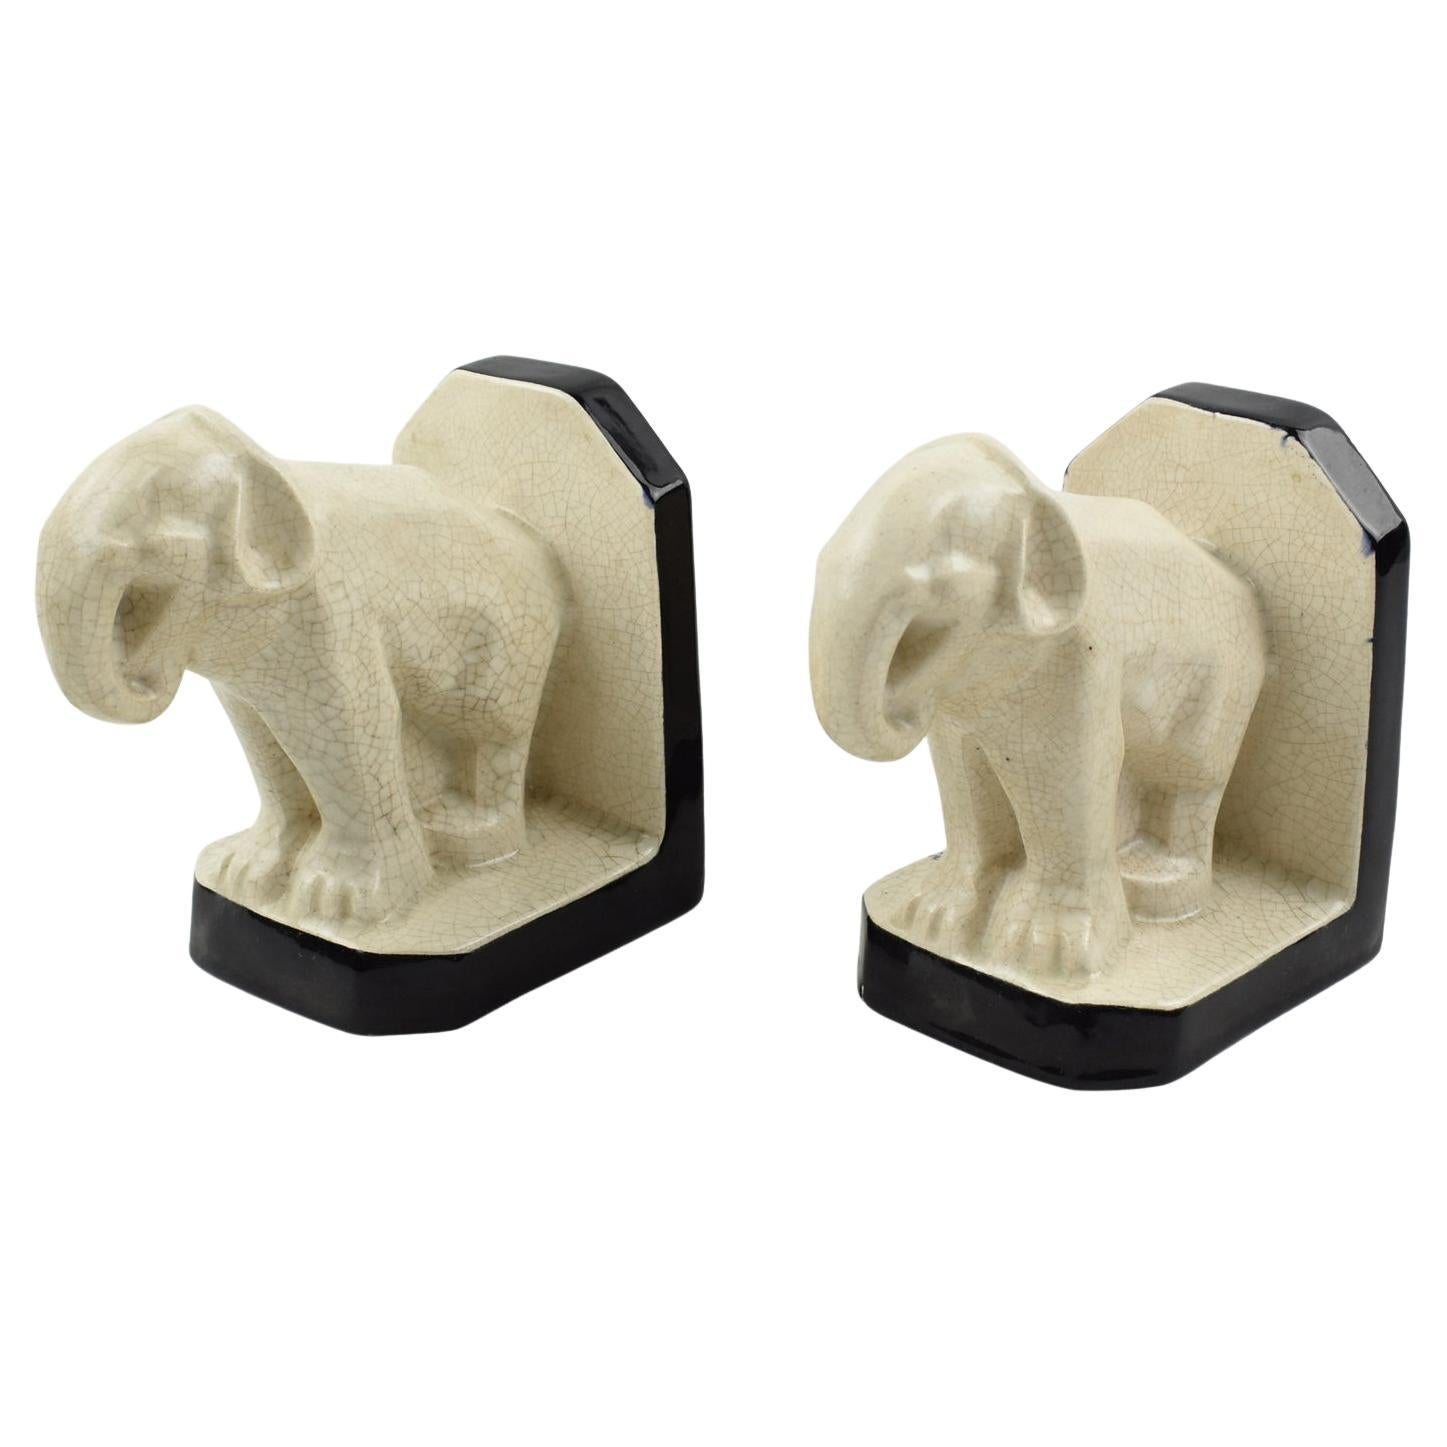 Art Deco Crackle Ceramic Elephant Sculpture Bookends by Le Moine, France 1930s